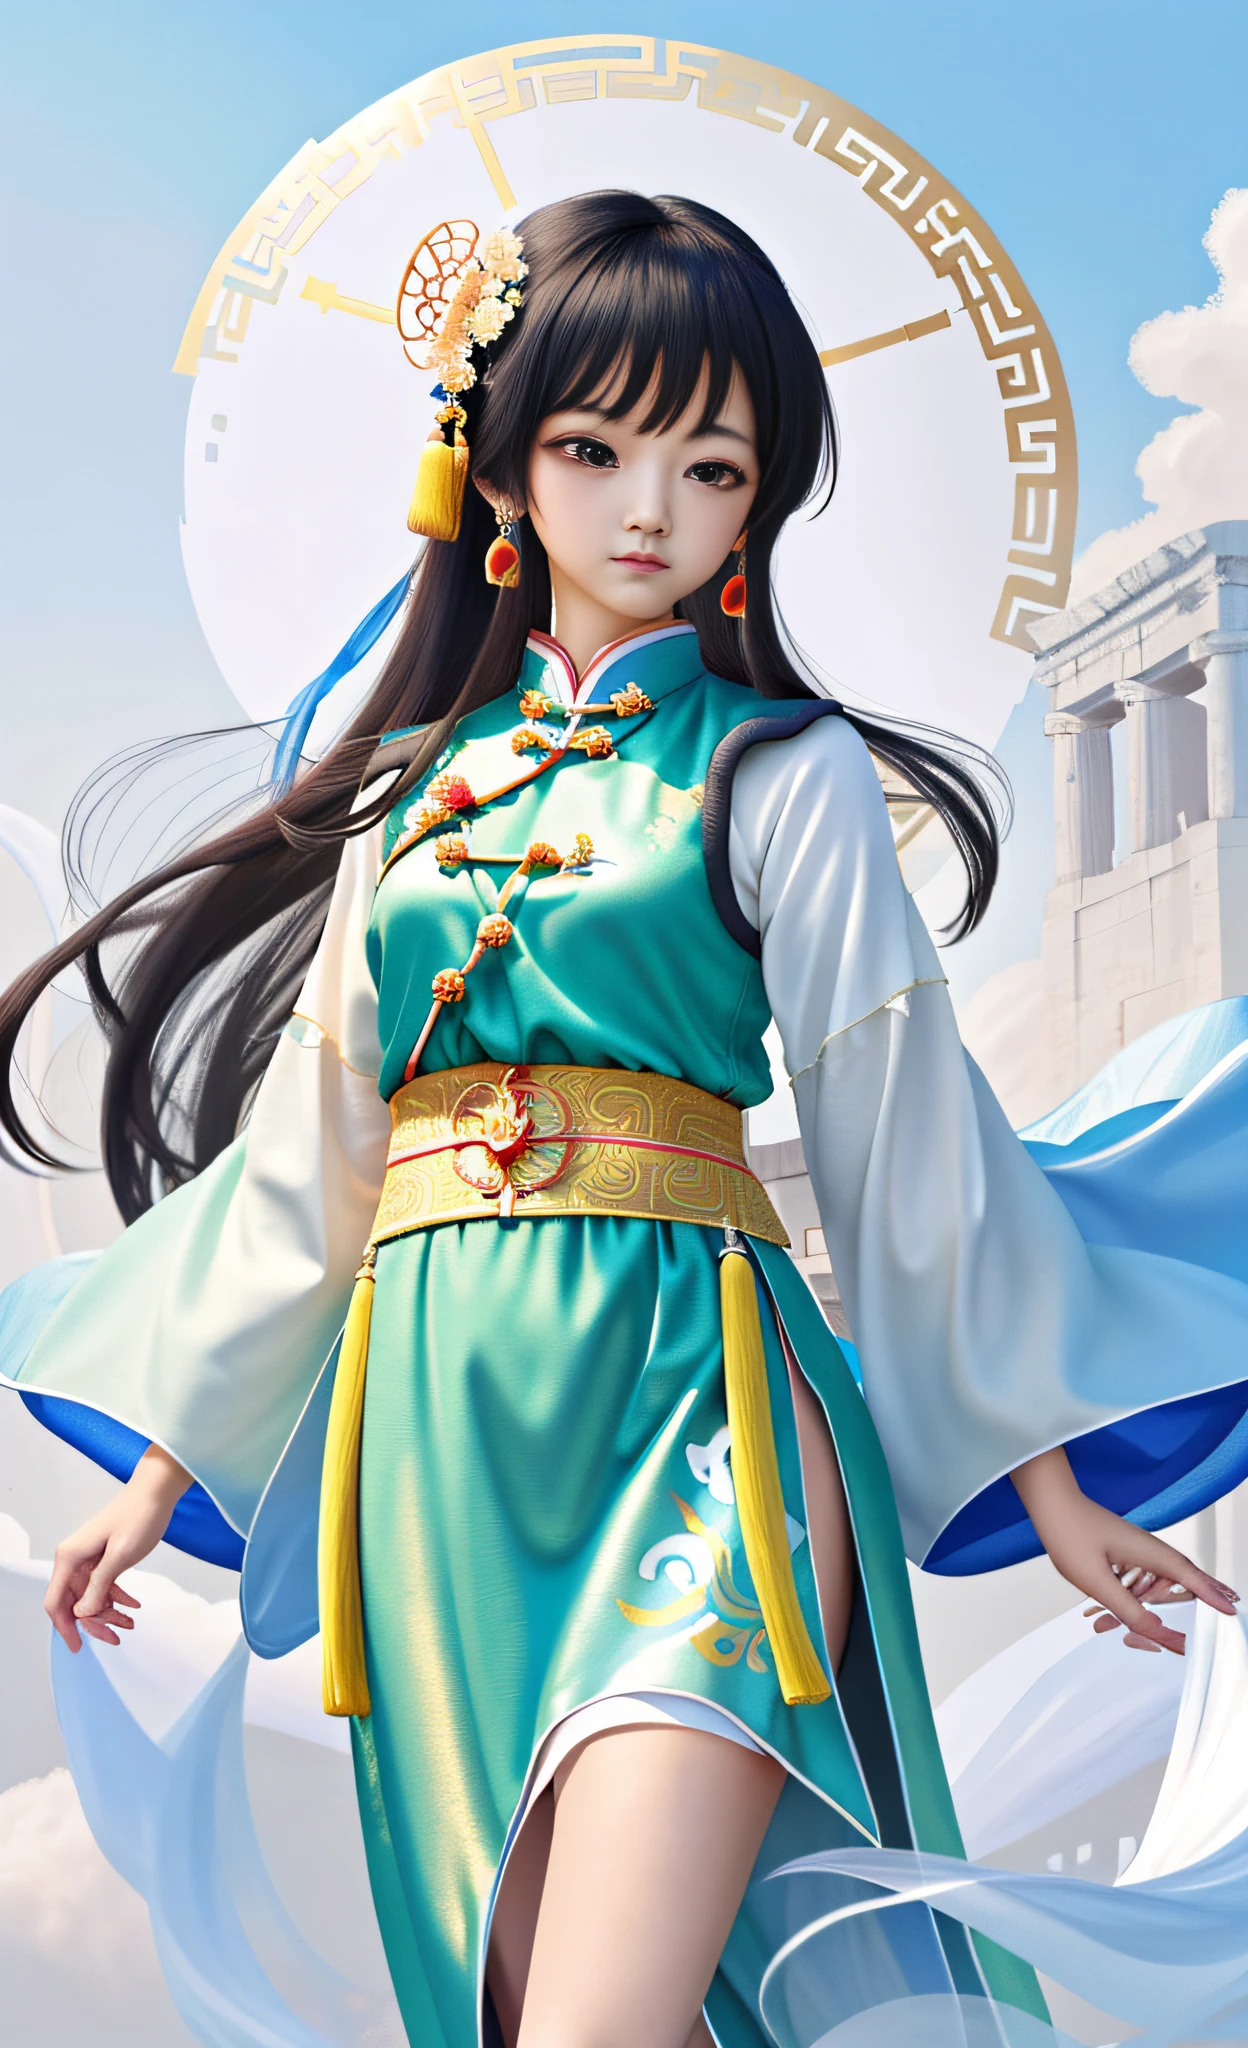 一个漂亮的女孩, 中国古代服饰, 全身, 清晰的脸, 干净的白色背景, 杰作, 超级细节, 史诗般的作曲, 超高清, 高质量, 极其详细, 8K 壁纸, 超级细节, 32K